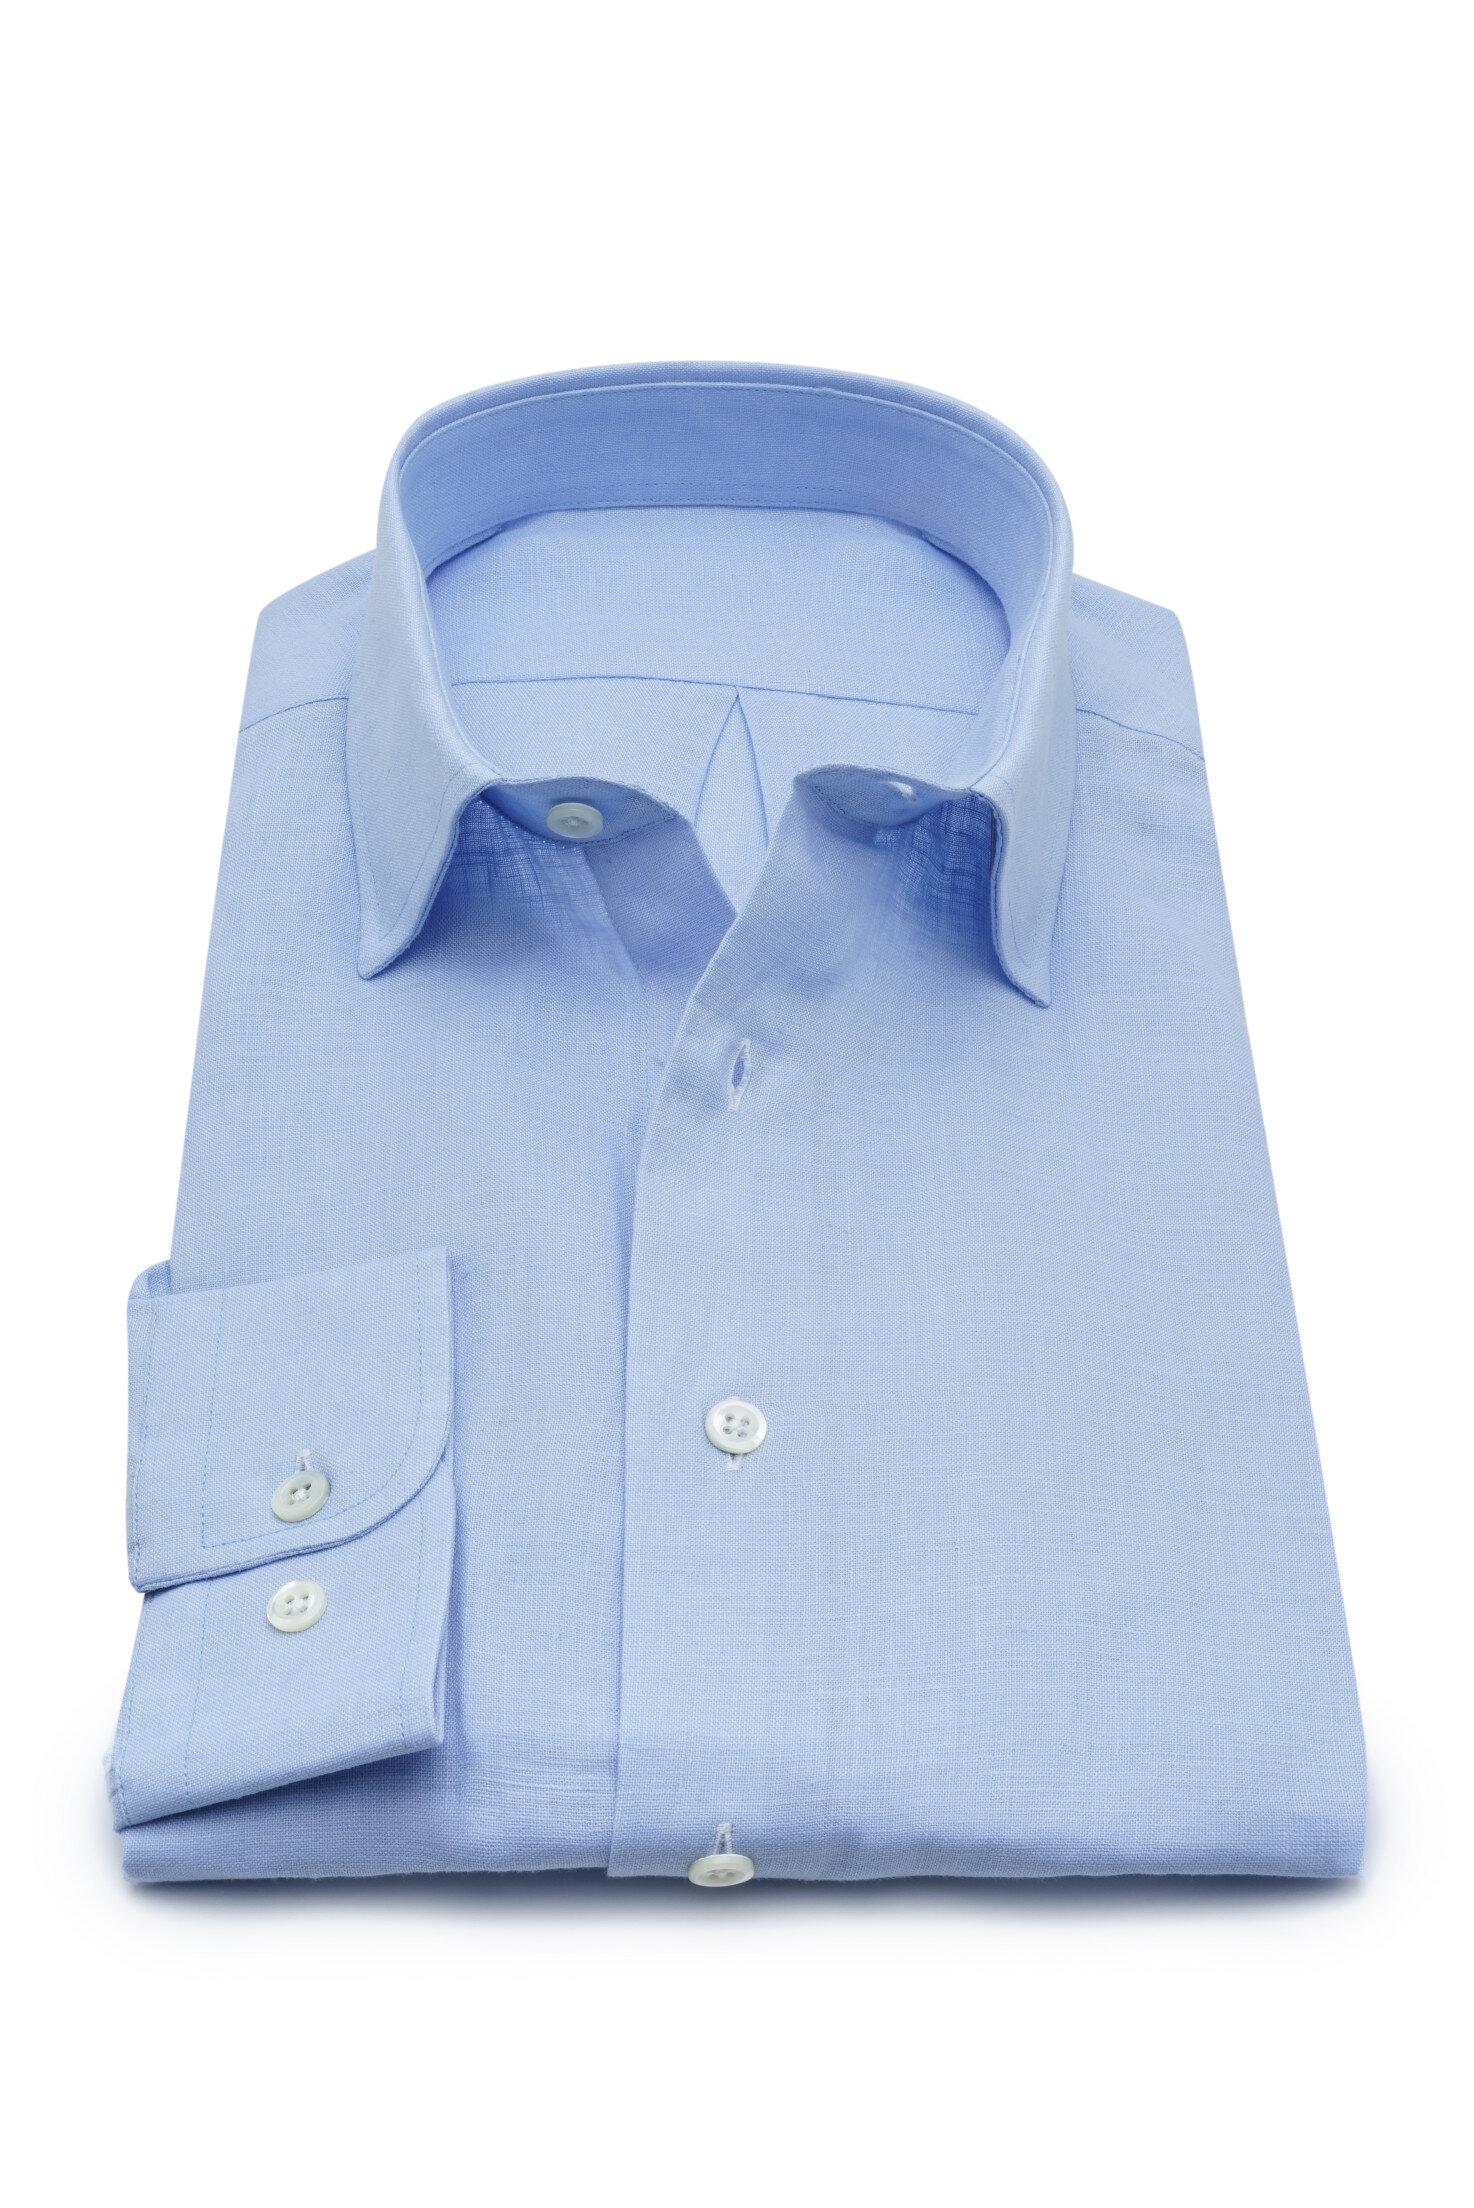 549 COTLIN003 | Men's Dress Shirt Manufacturers - Cotton & Linen | Private Label Shirts